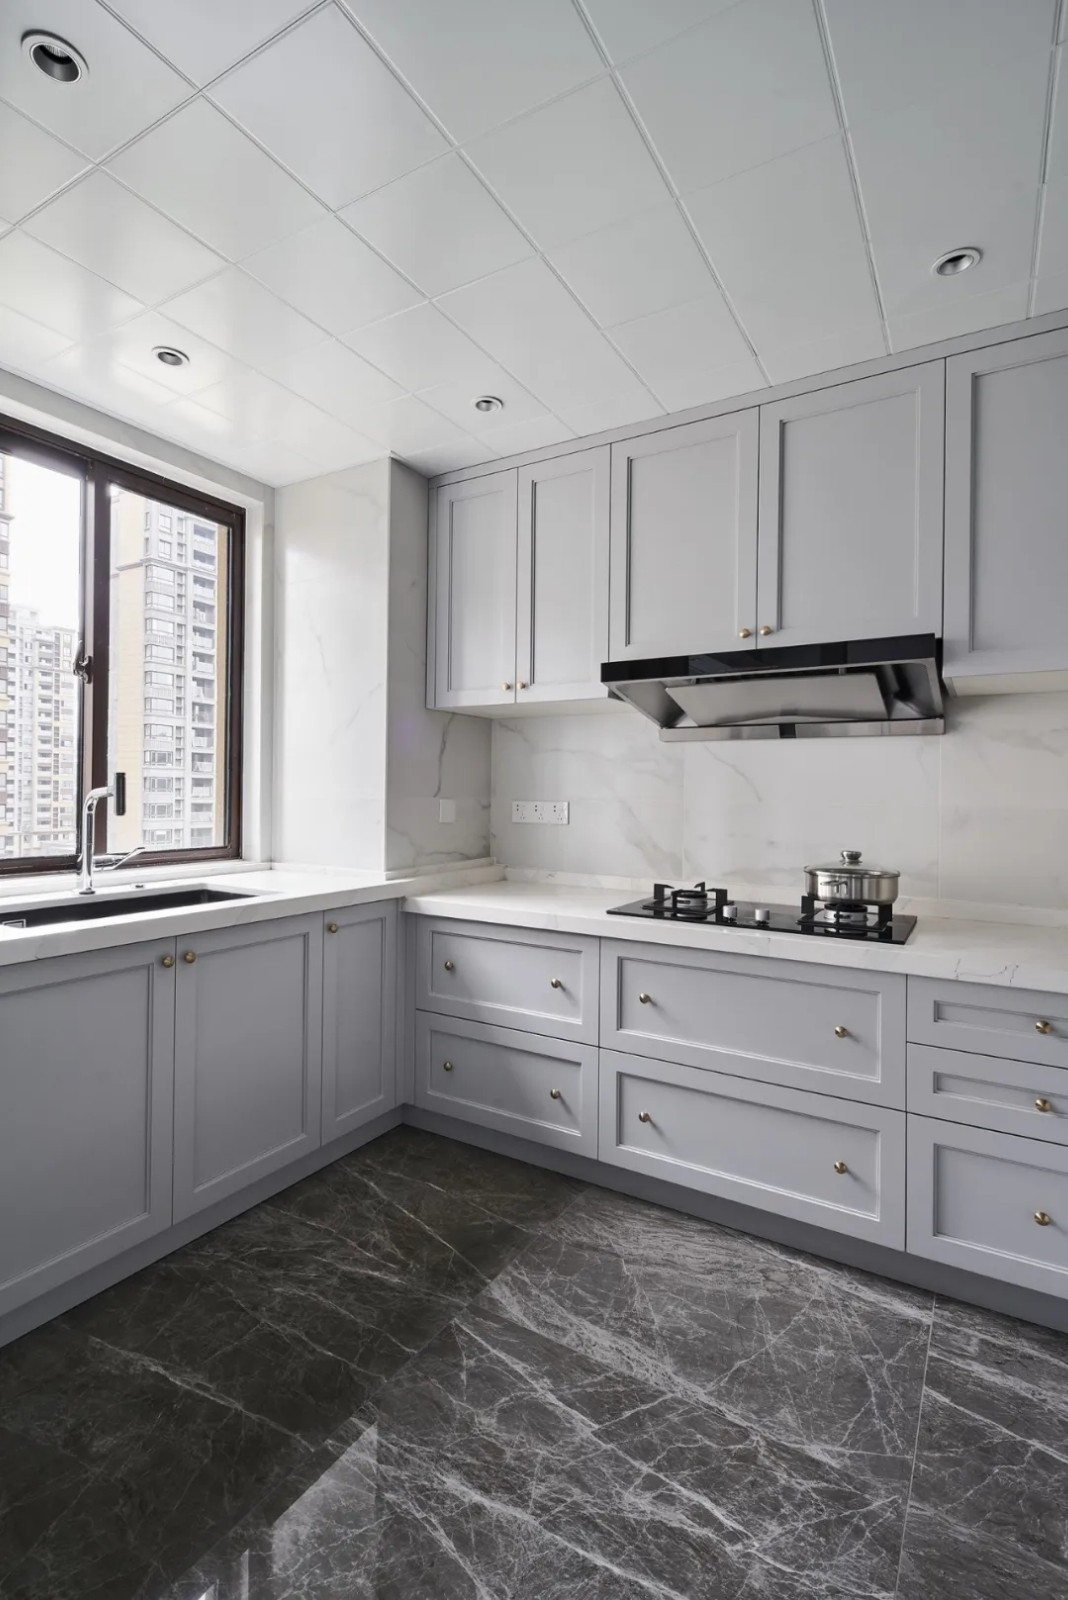 佛山裝修公司現代簡約風格室內裝修效果圖-廚房